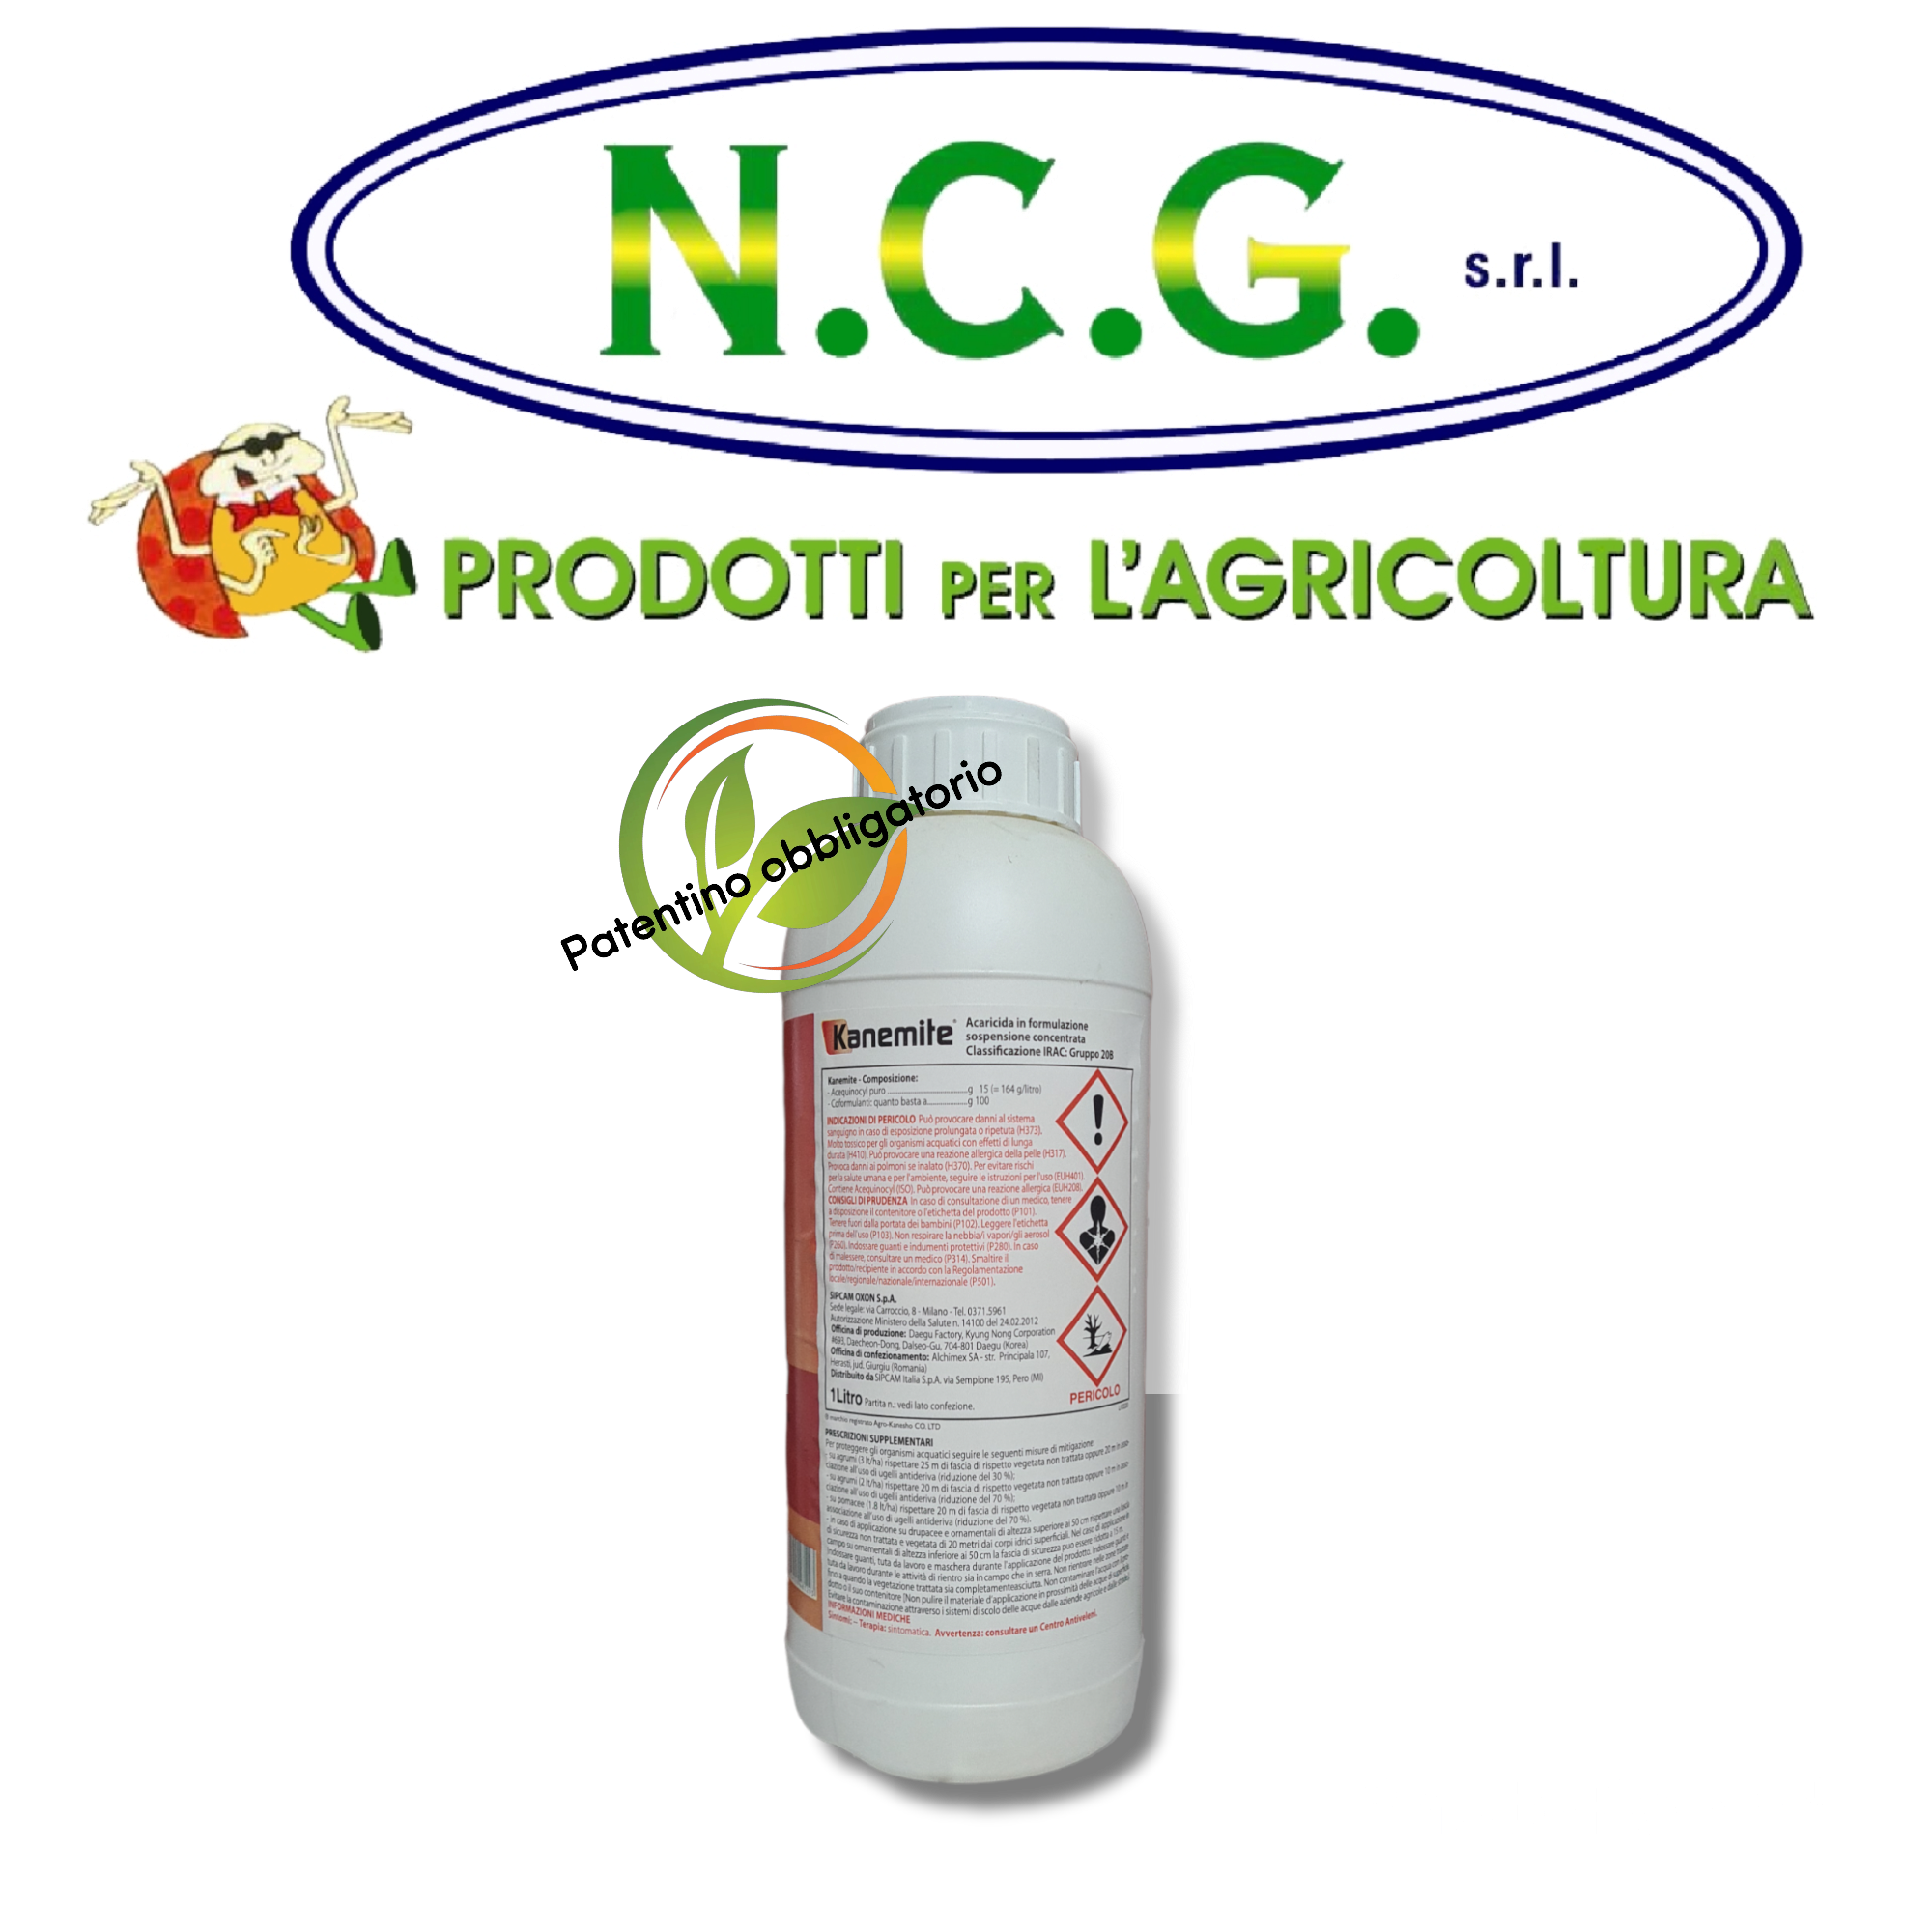 Kanemite Sipcam da lt 1 acaricida per nocciolo, pomodoro, melanzana e –  NCGsrl